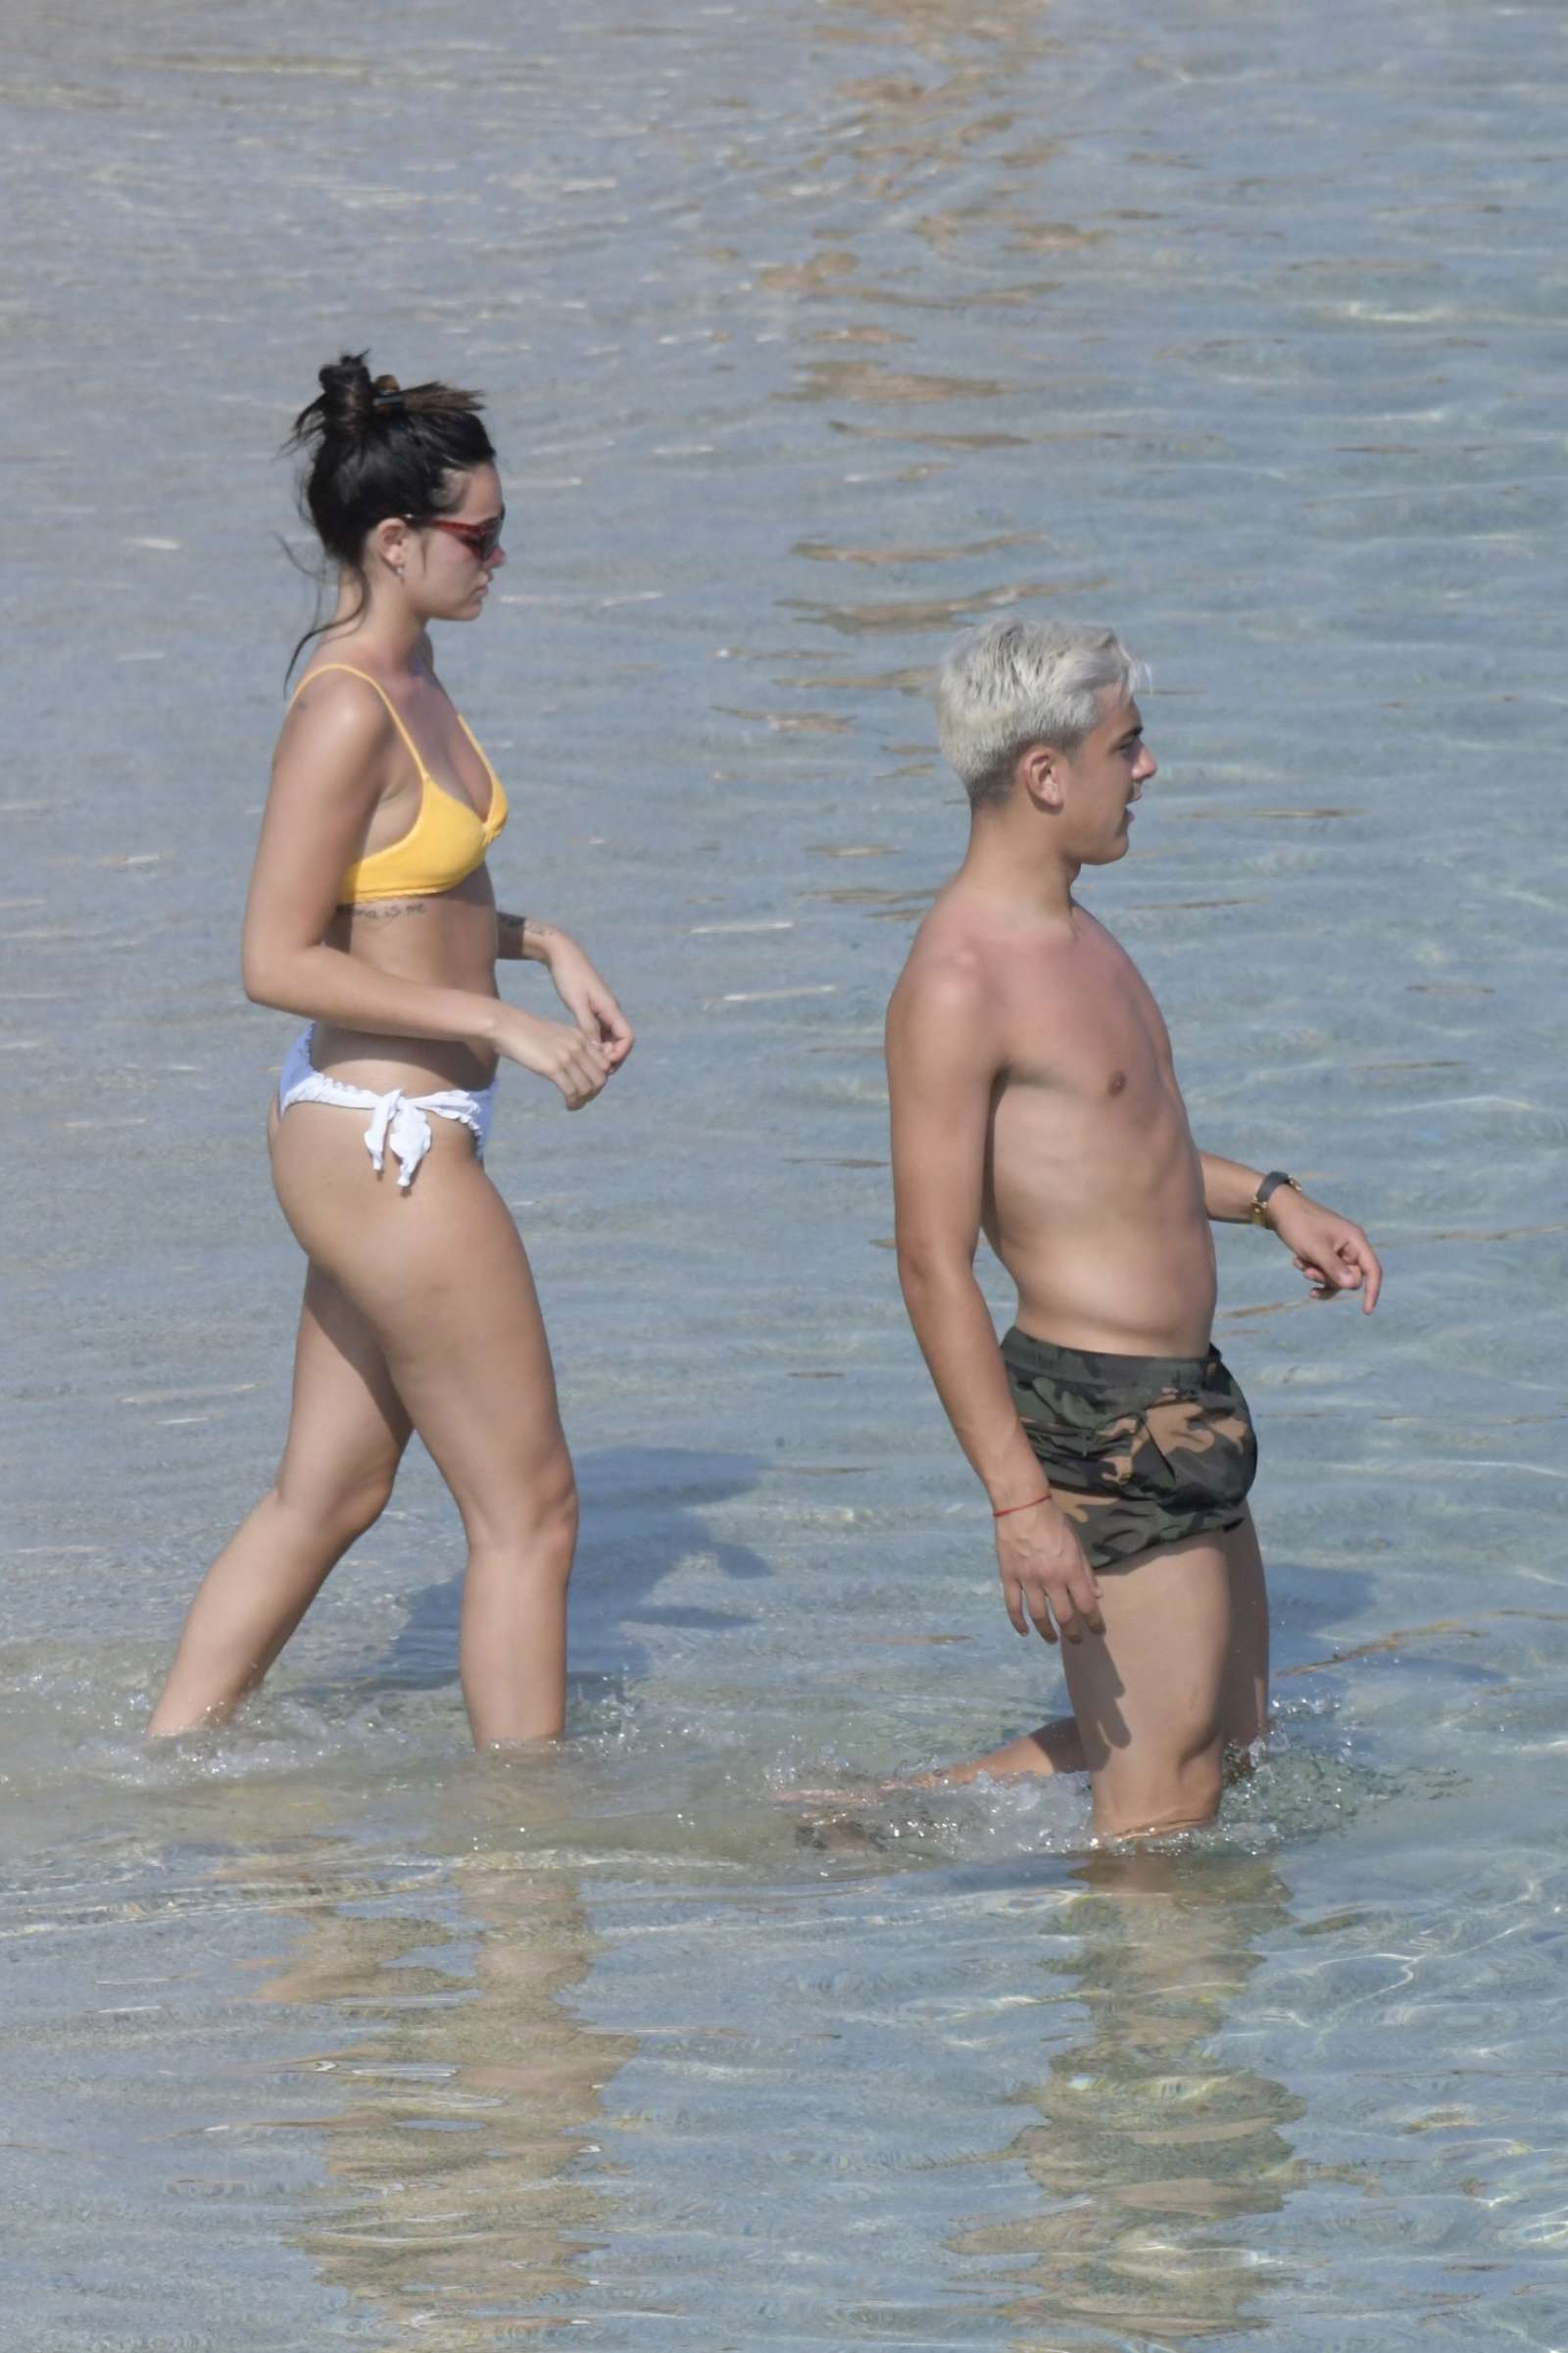 Oriana Sabatini in Bikini at the beach in Mykonos July 28, 2018 8